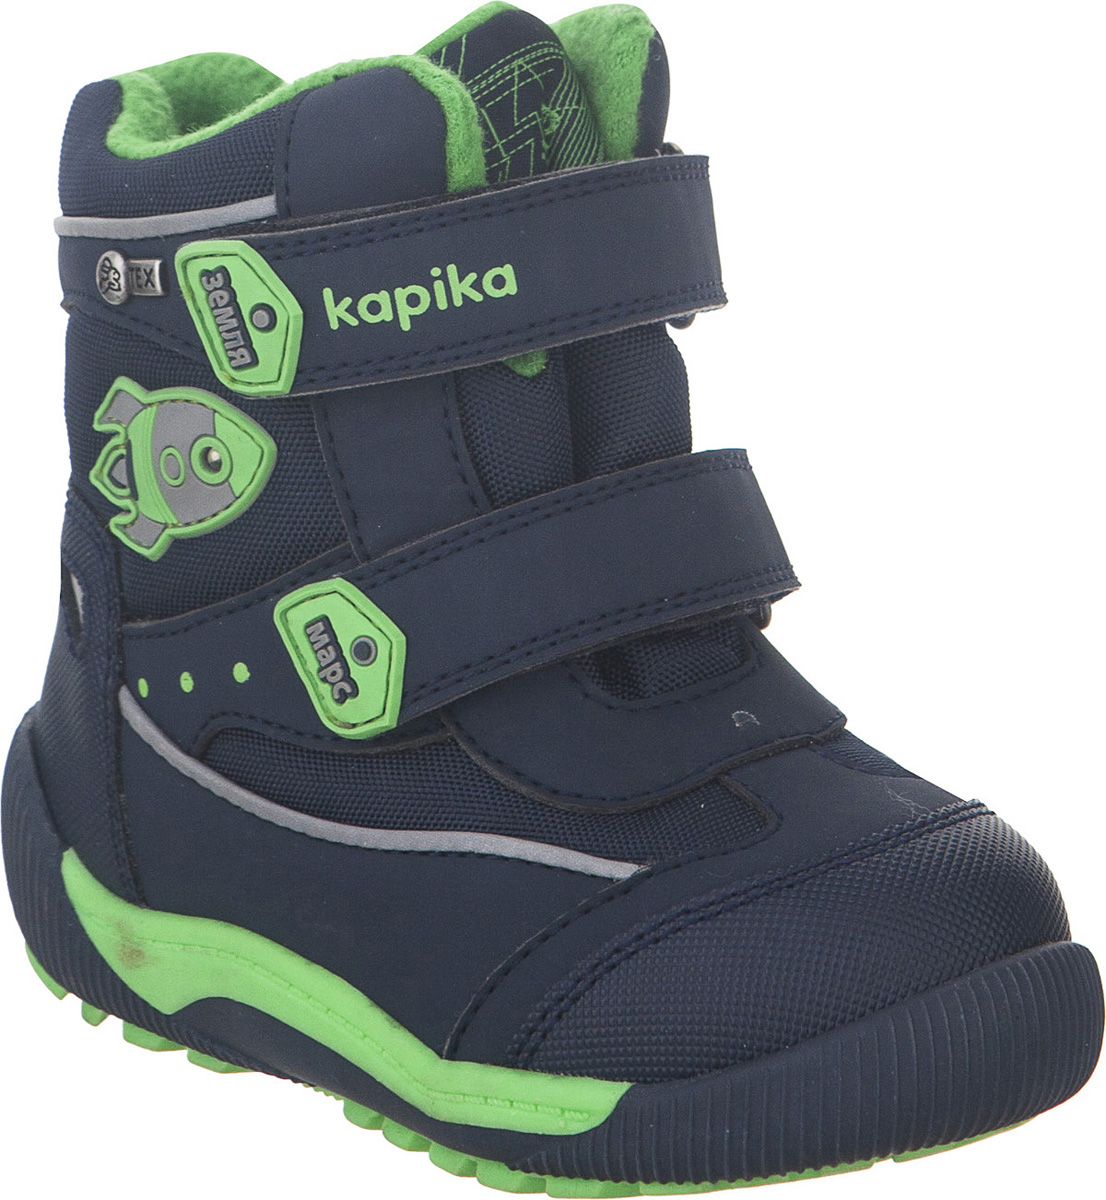 Ботинки для мальчика Kapika KapiTEX, цвет: темно-синий. 41207-2. Размер 24